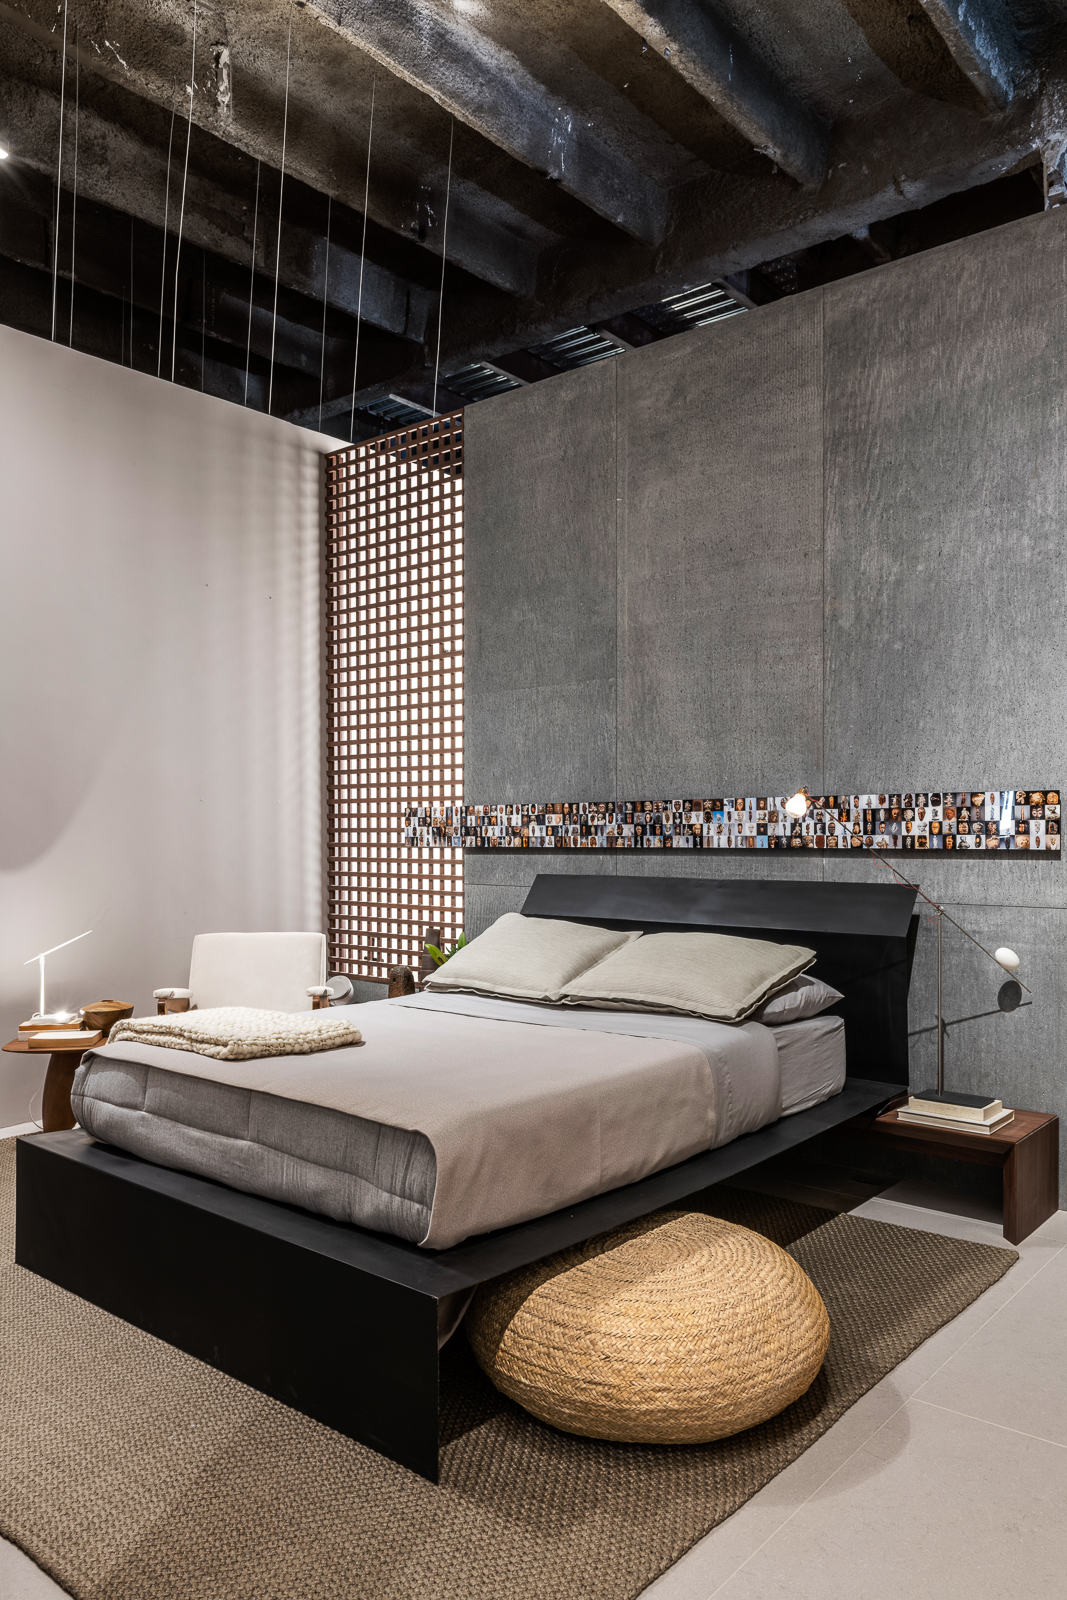 gustavo martins loft um casacor sao paulo mostras decoracao design cama quarto tapete luminaria